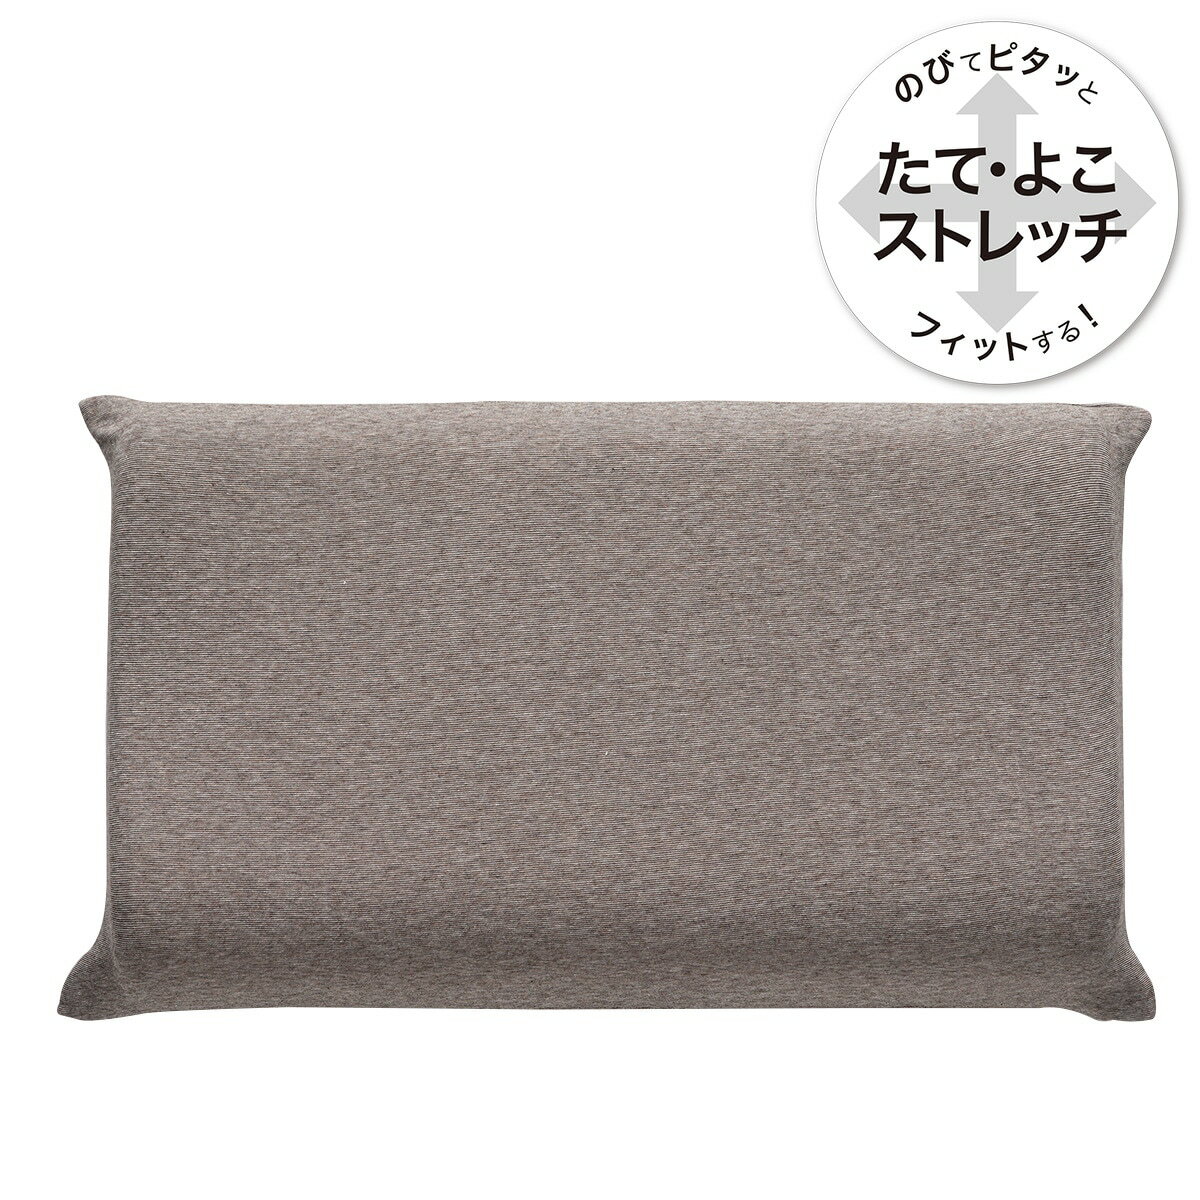 ニトリののびてピタッとフィットする枕カバー (Nフィットニット ソッコウミニサイズ DBR)(布団・寝具)